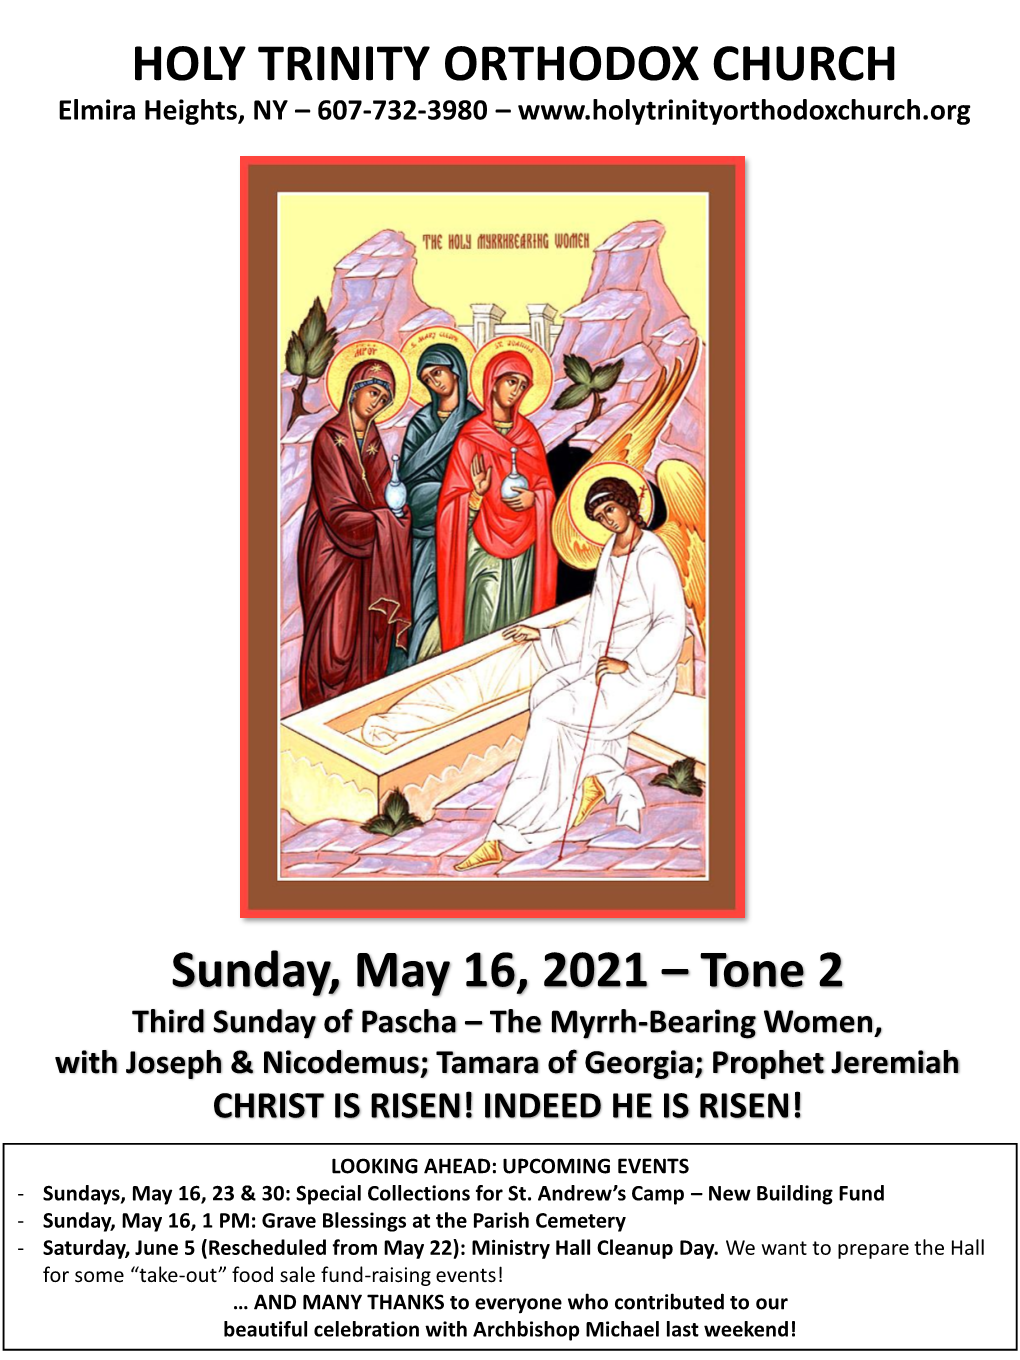 HOLY TRINITY ORTHODOX CHURCH Sunday, May 16, 2021